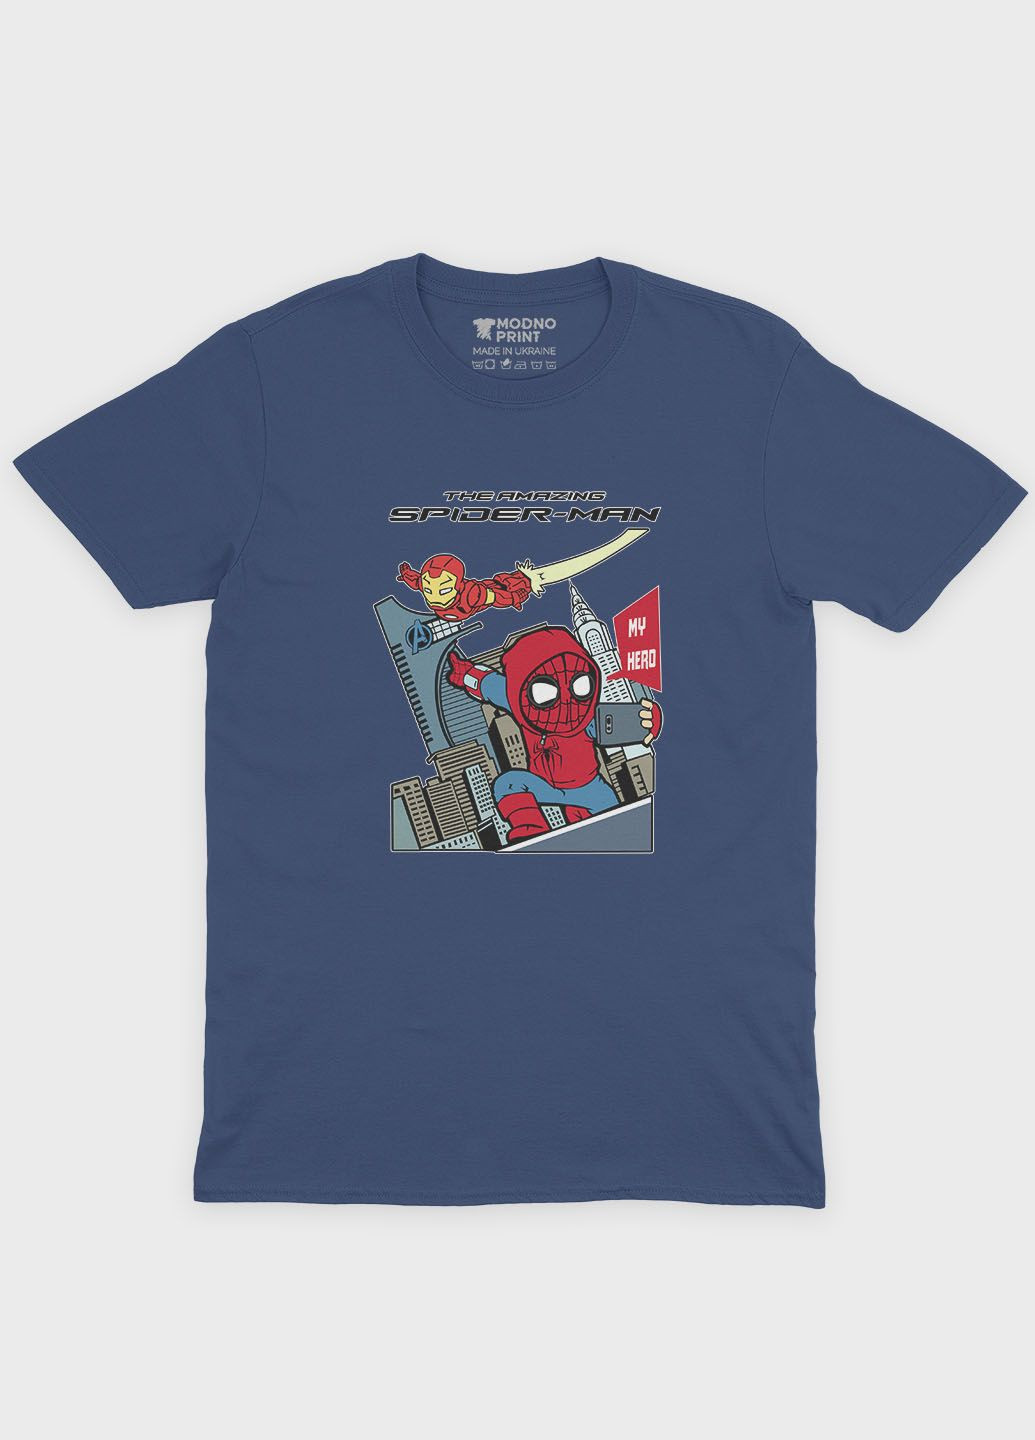 Темно-синя демісезонна футболка для хлопчика з принтом супергероя - людина-павук (ts001-1-nav-006-014-074-b) Modno